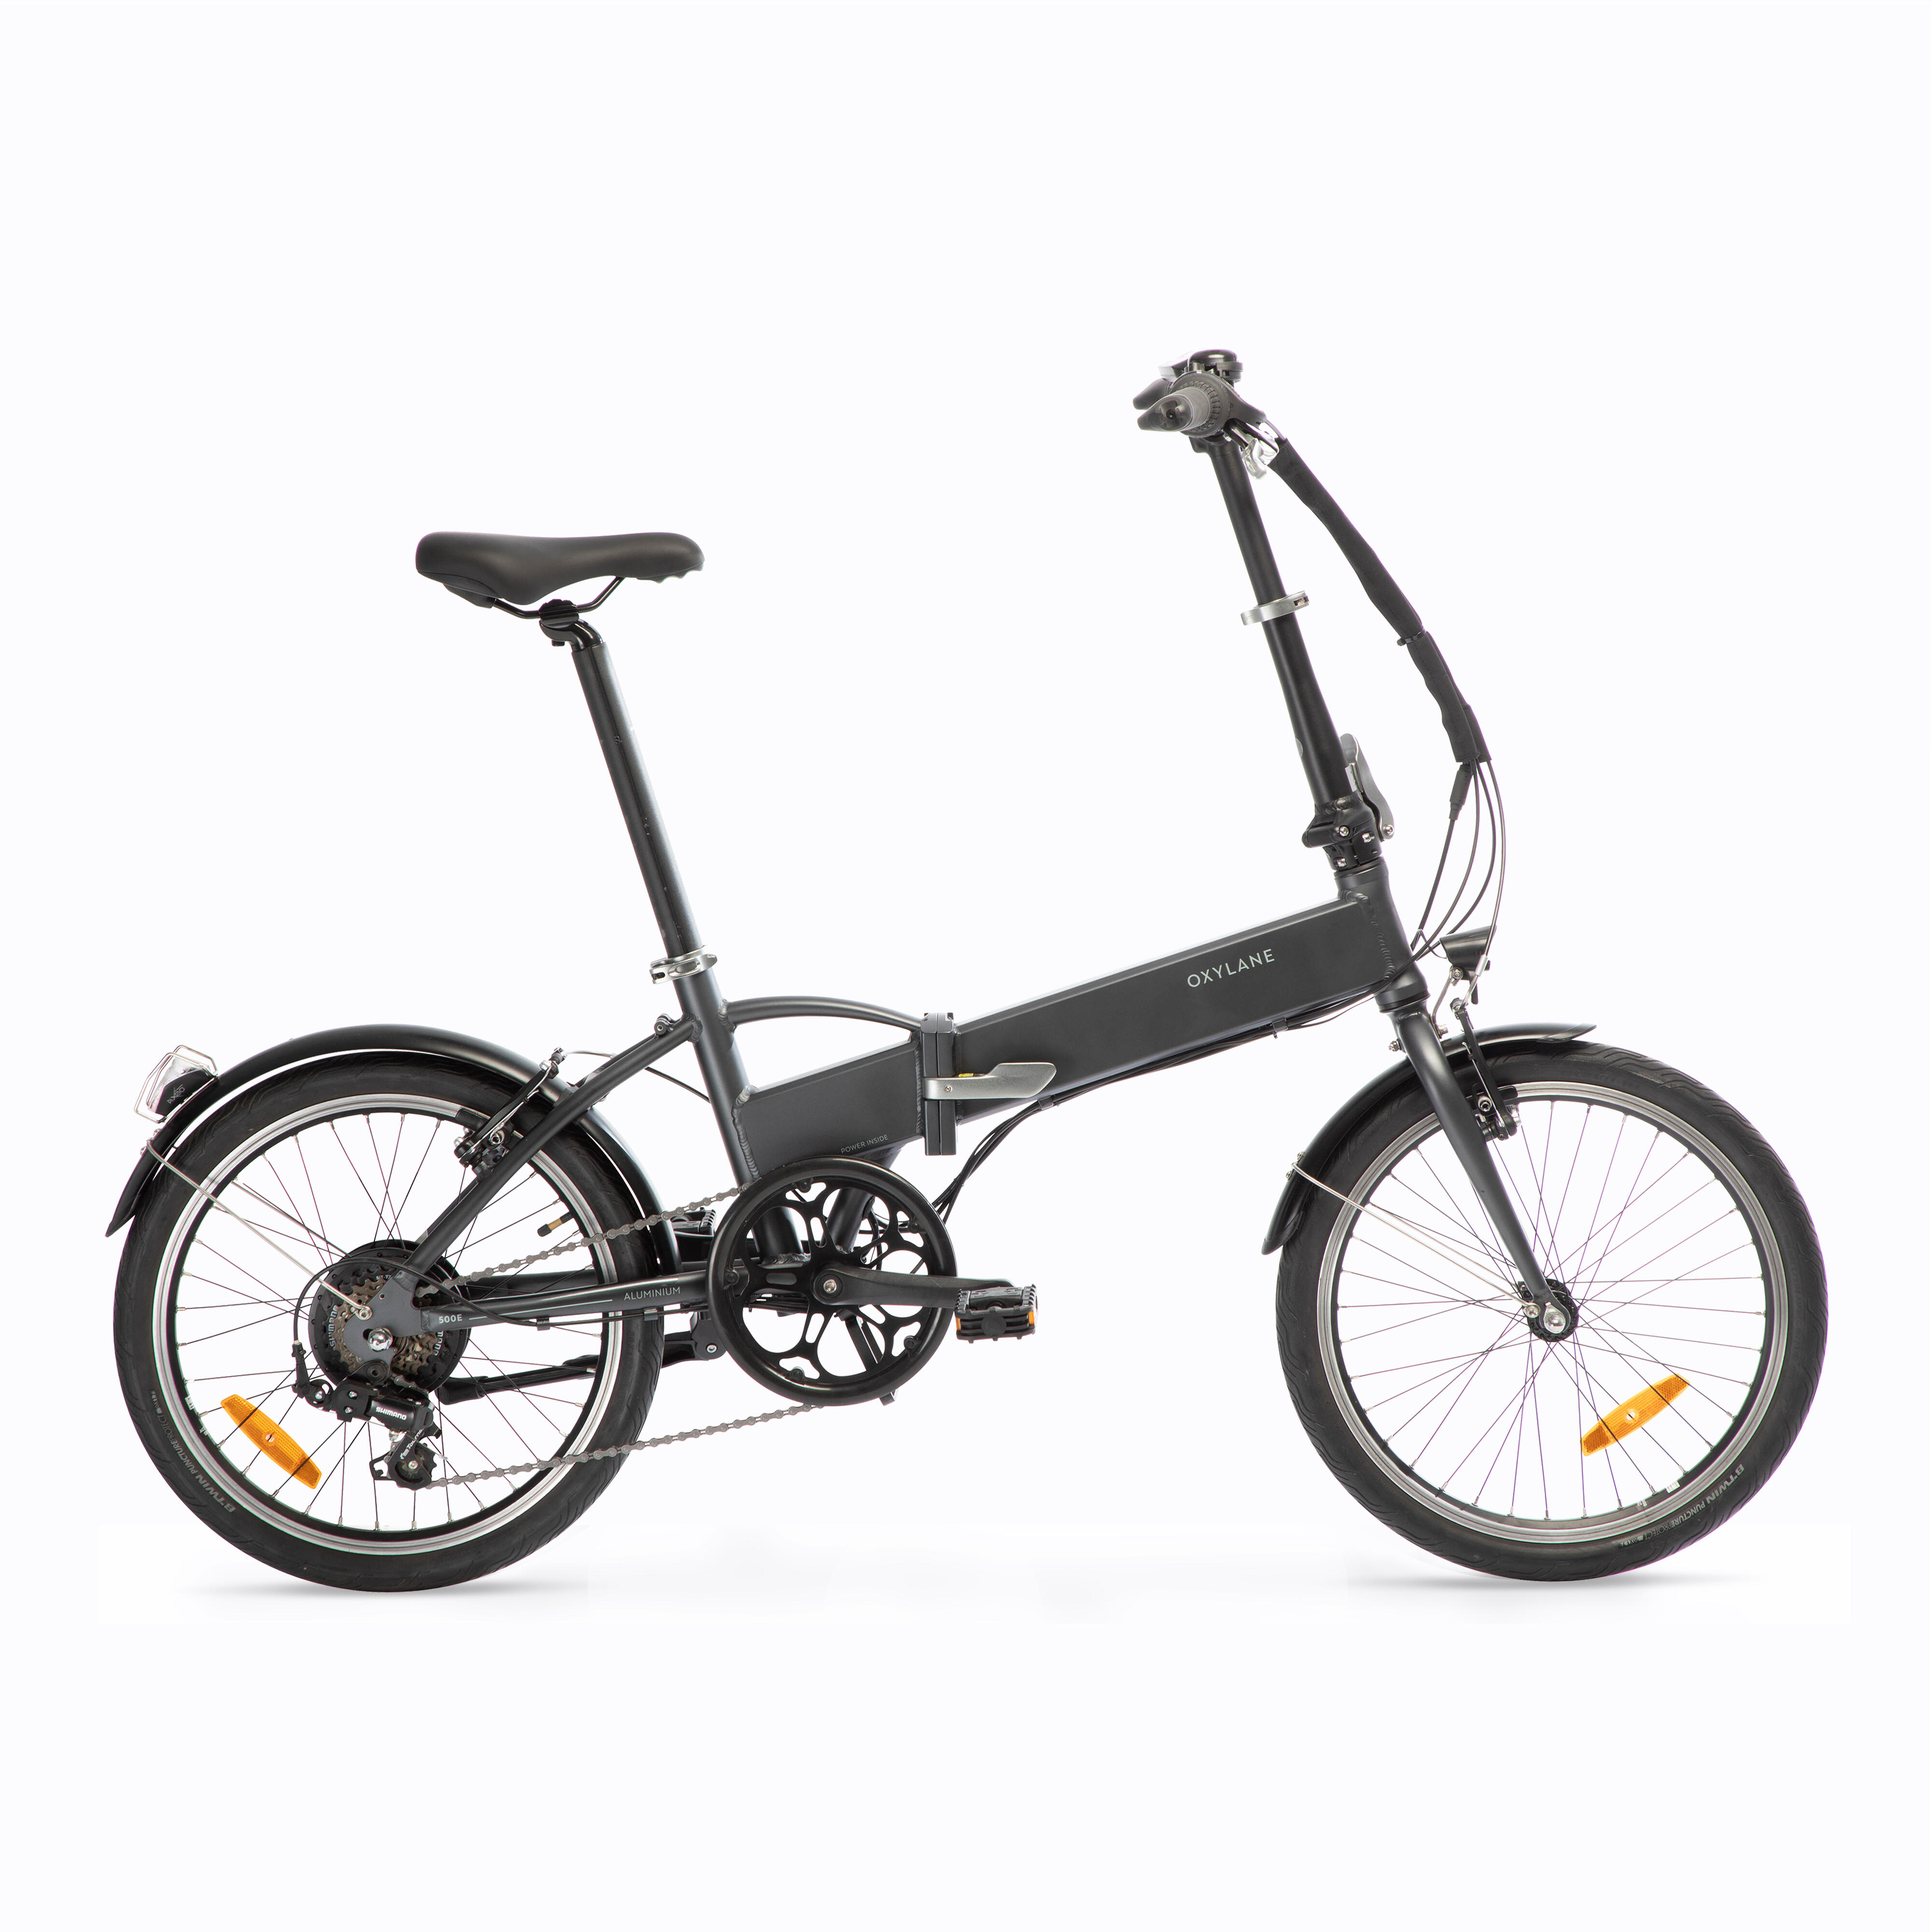 Bicicletă pliabilă cu asistență electrică TILT 500 E Gri-Negru BTWIN imagine noua